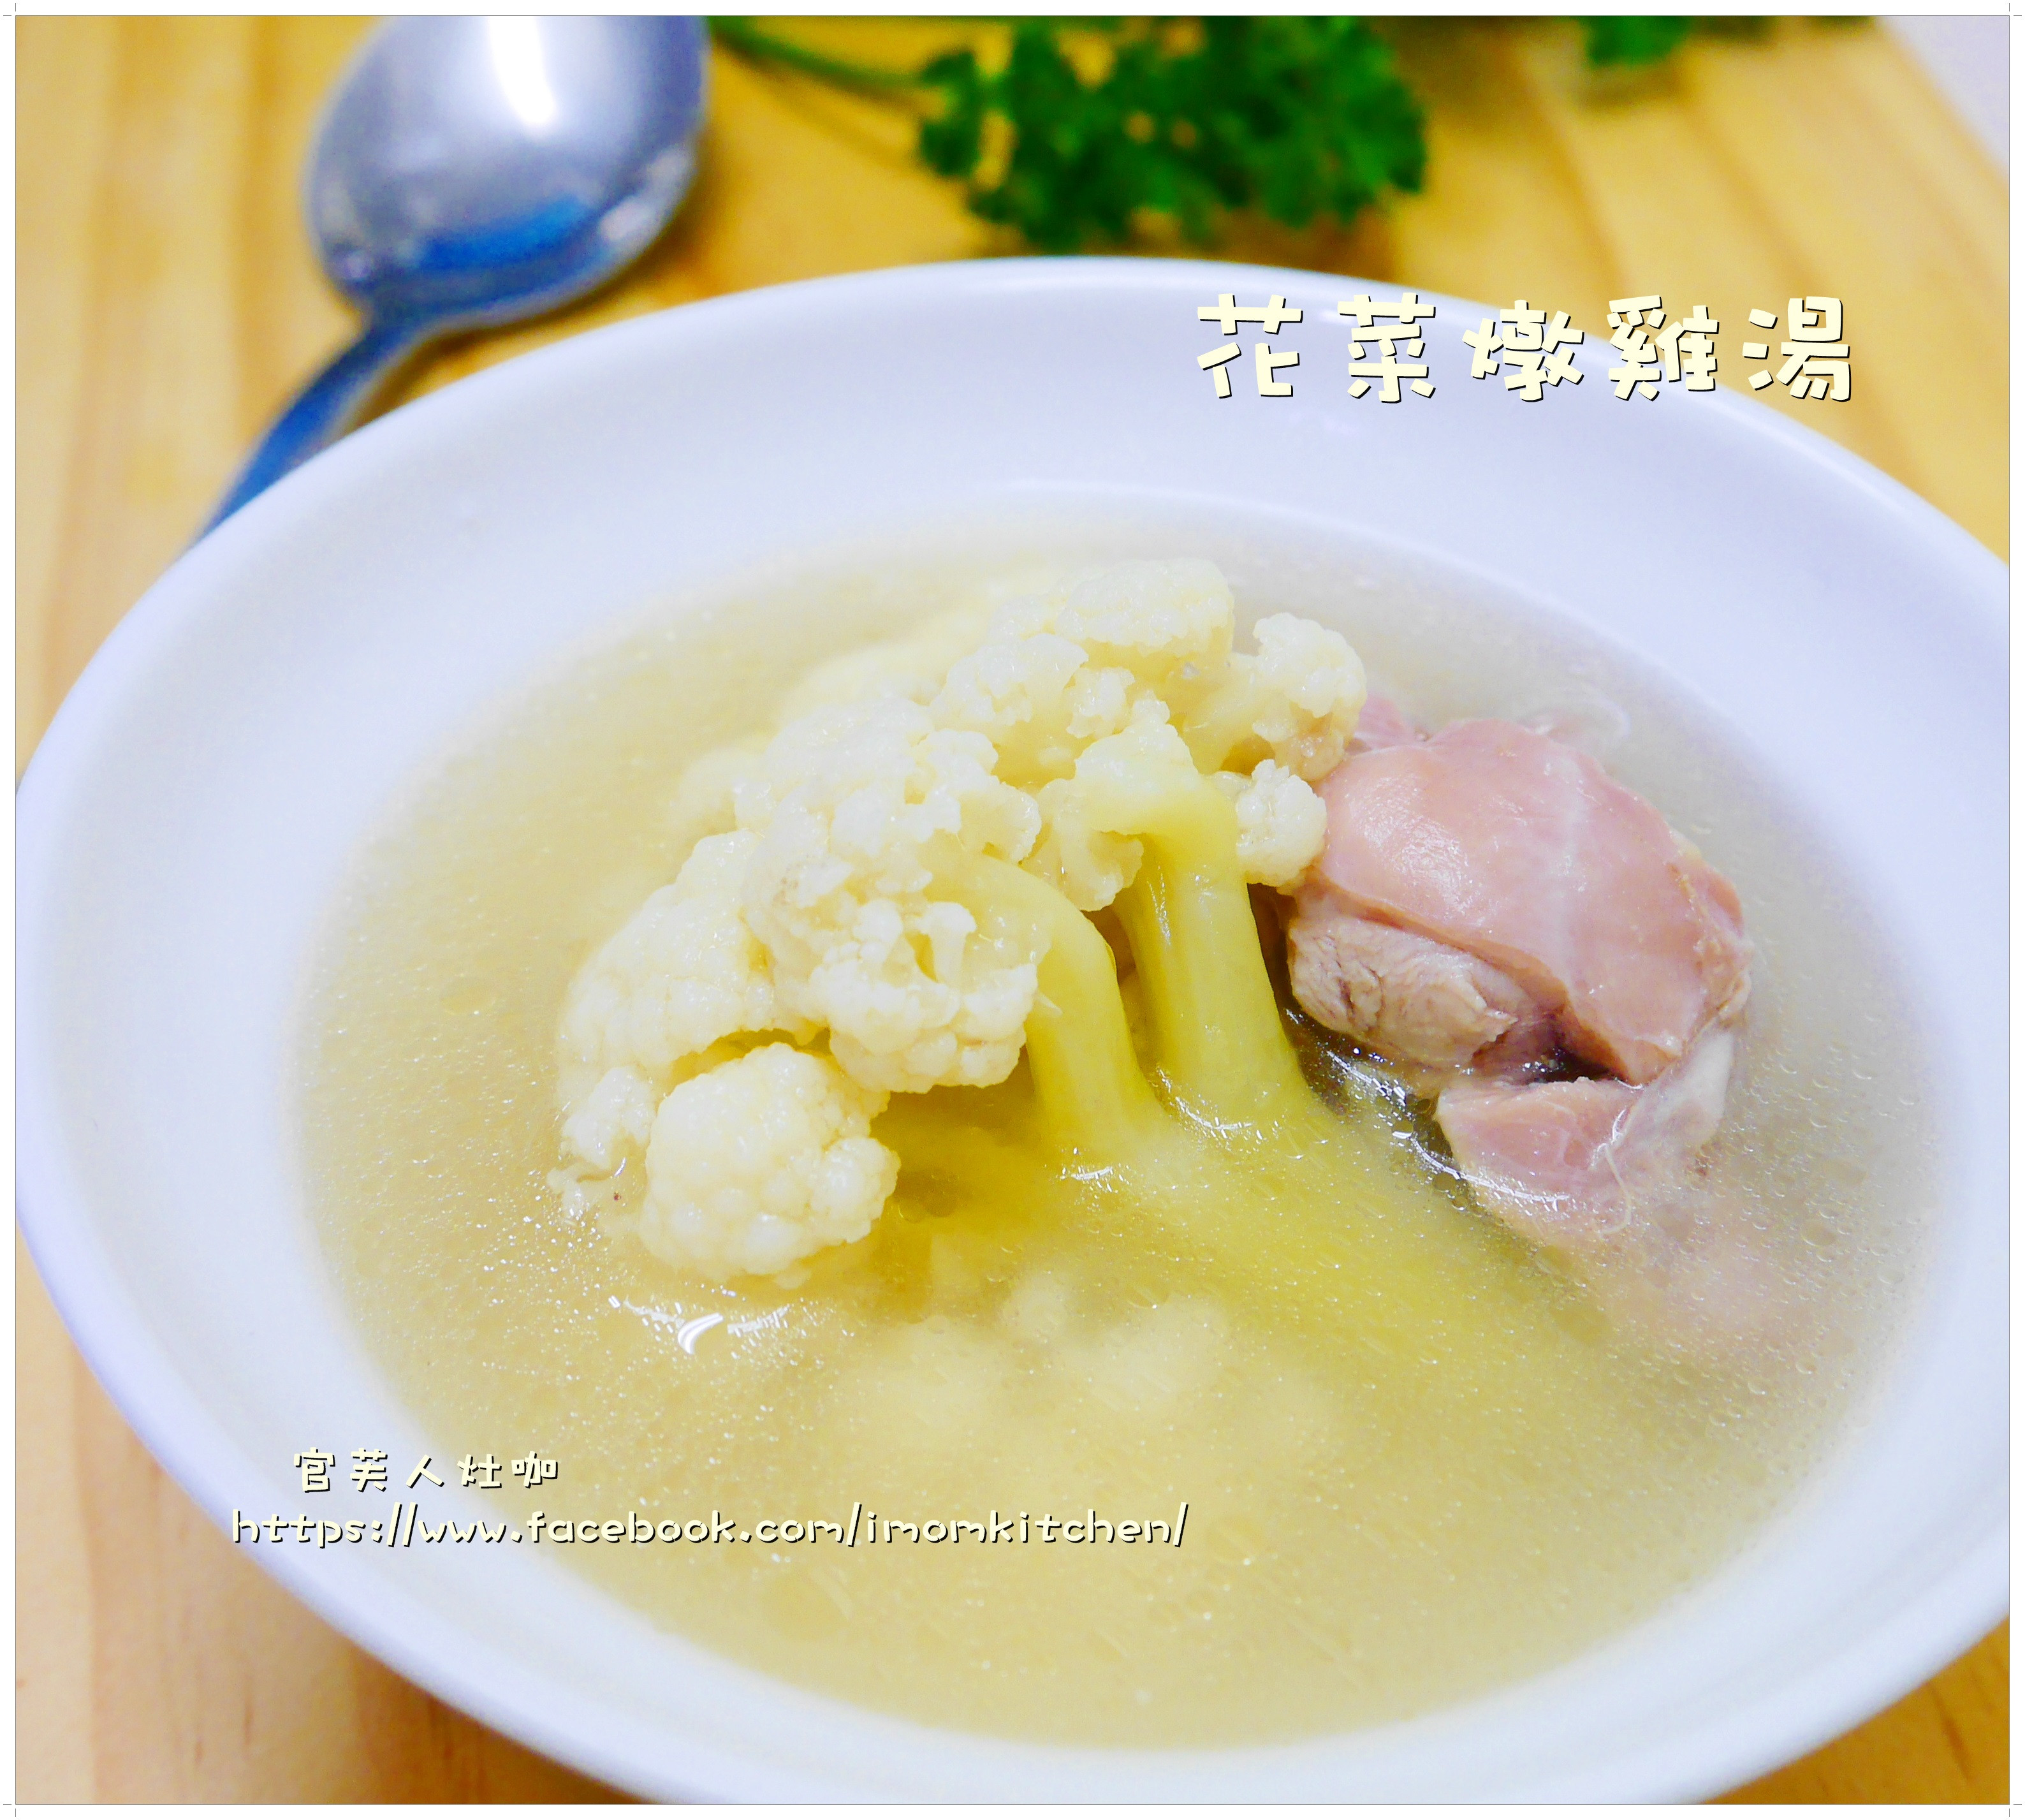 花菜燉雞湯by 四季原汁牛肉麵 愛料理